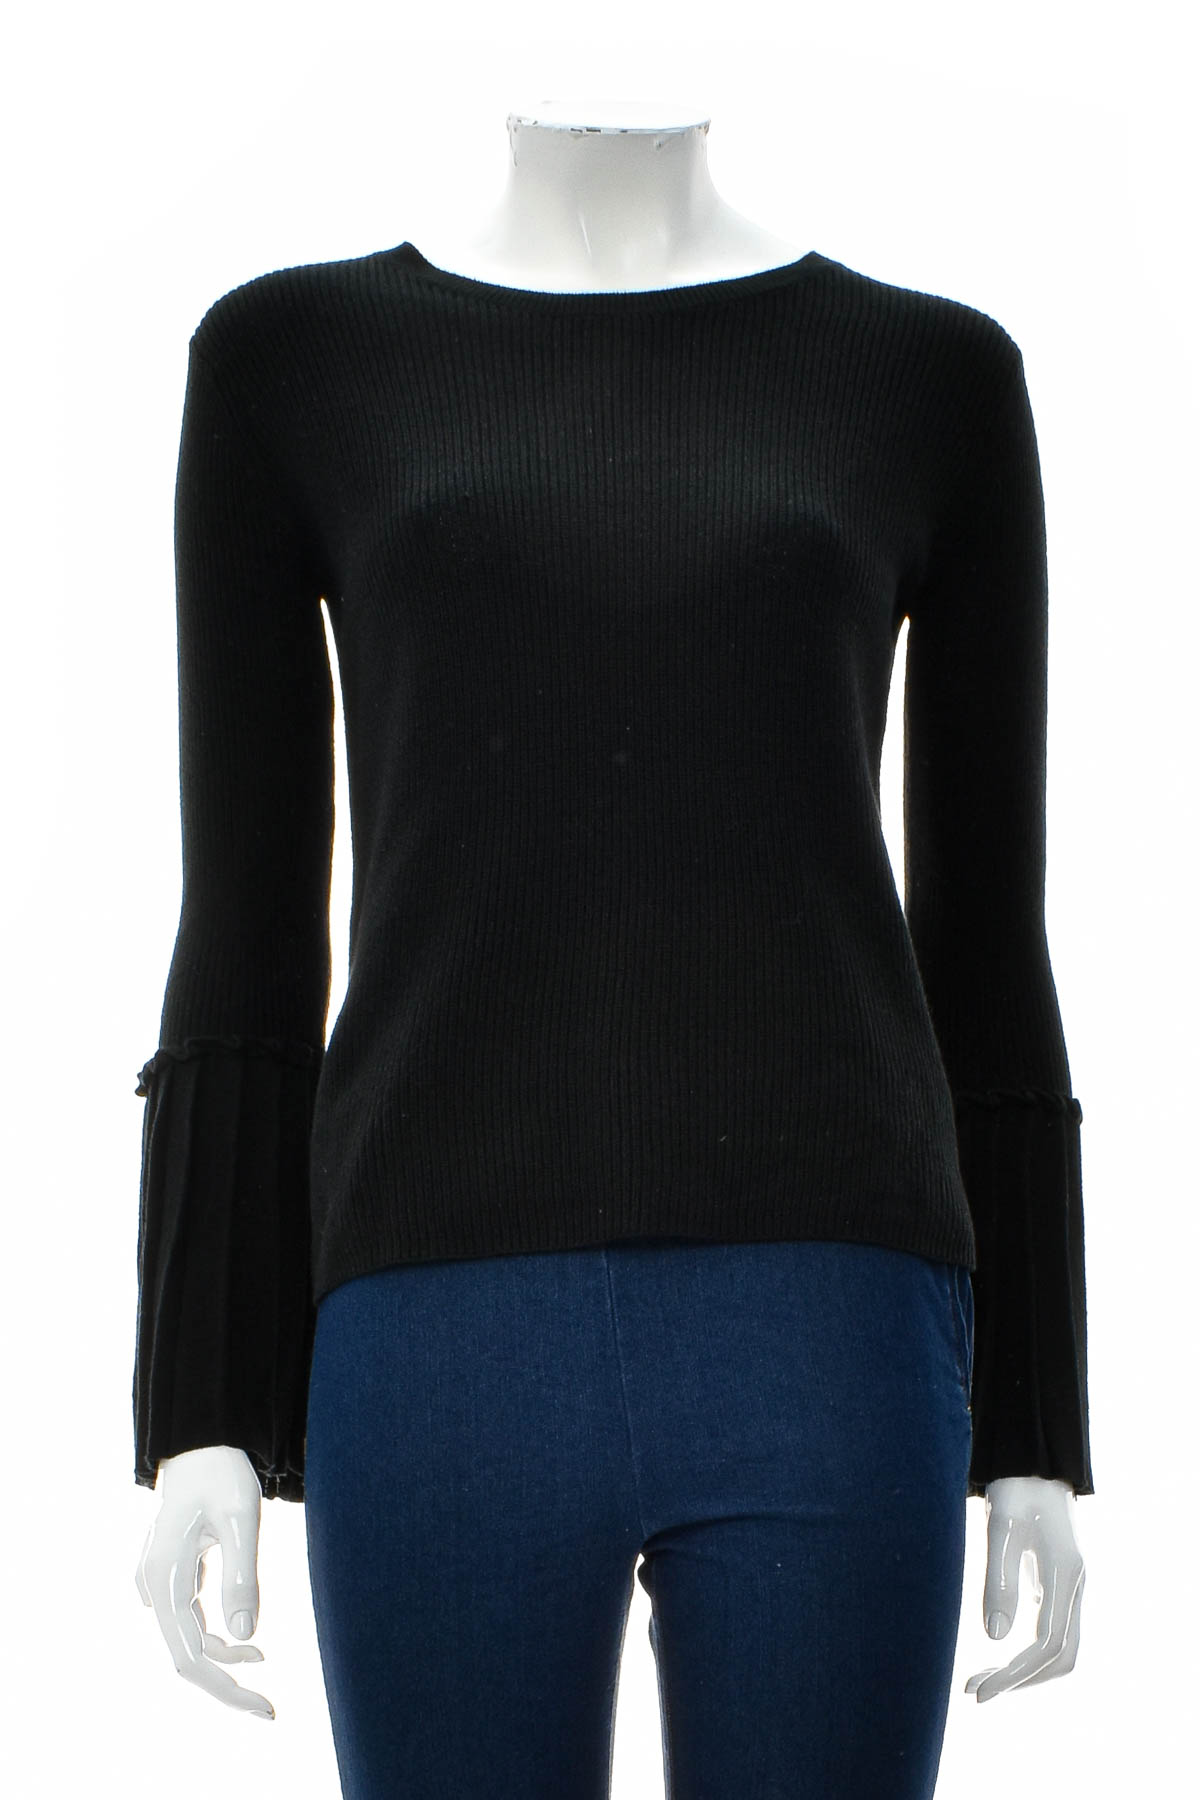 Women's sweater - Olivia Warren - 0